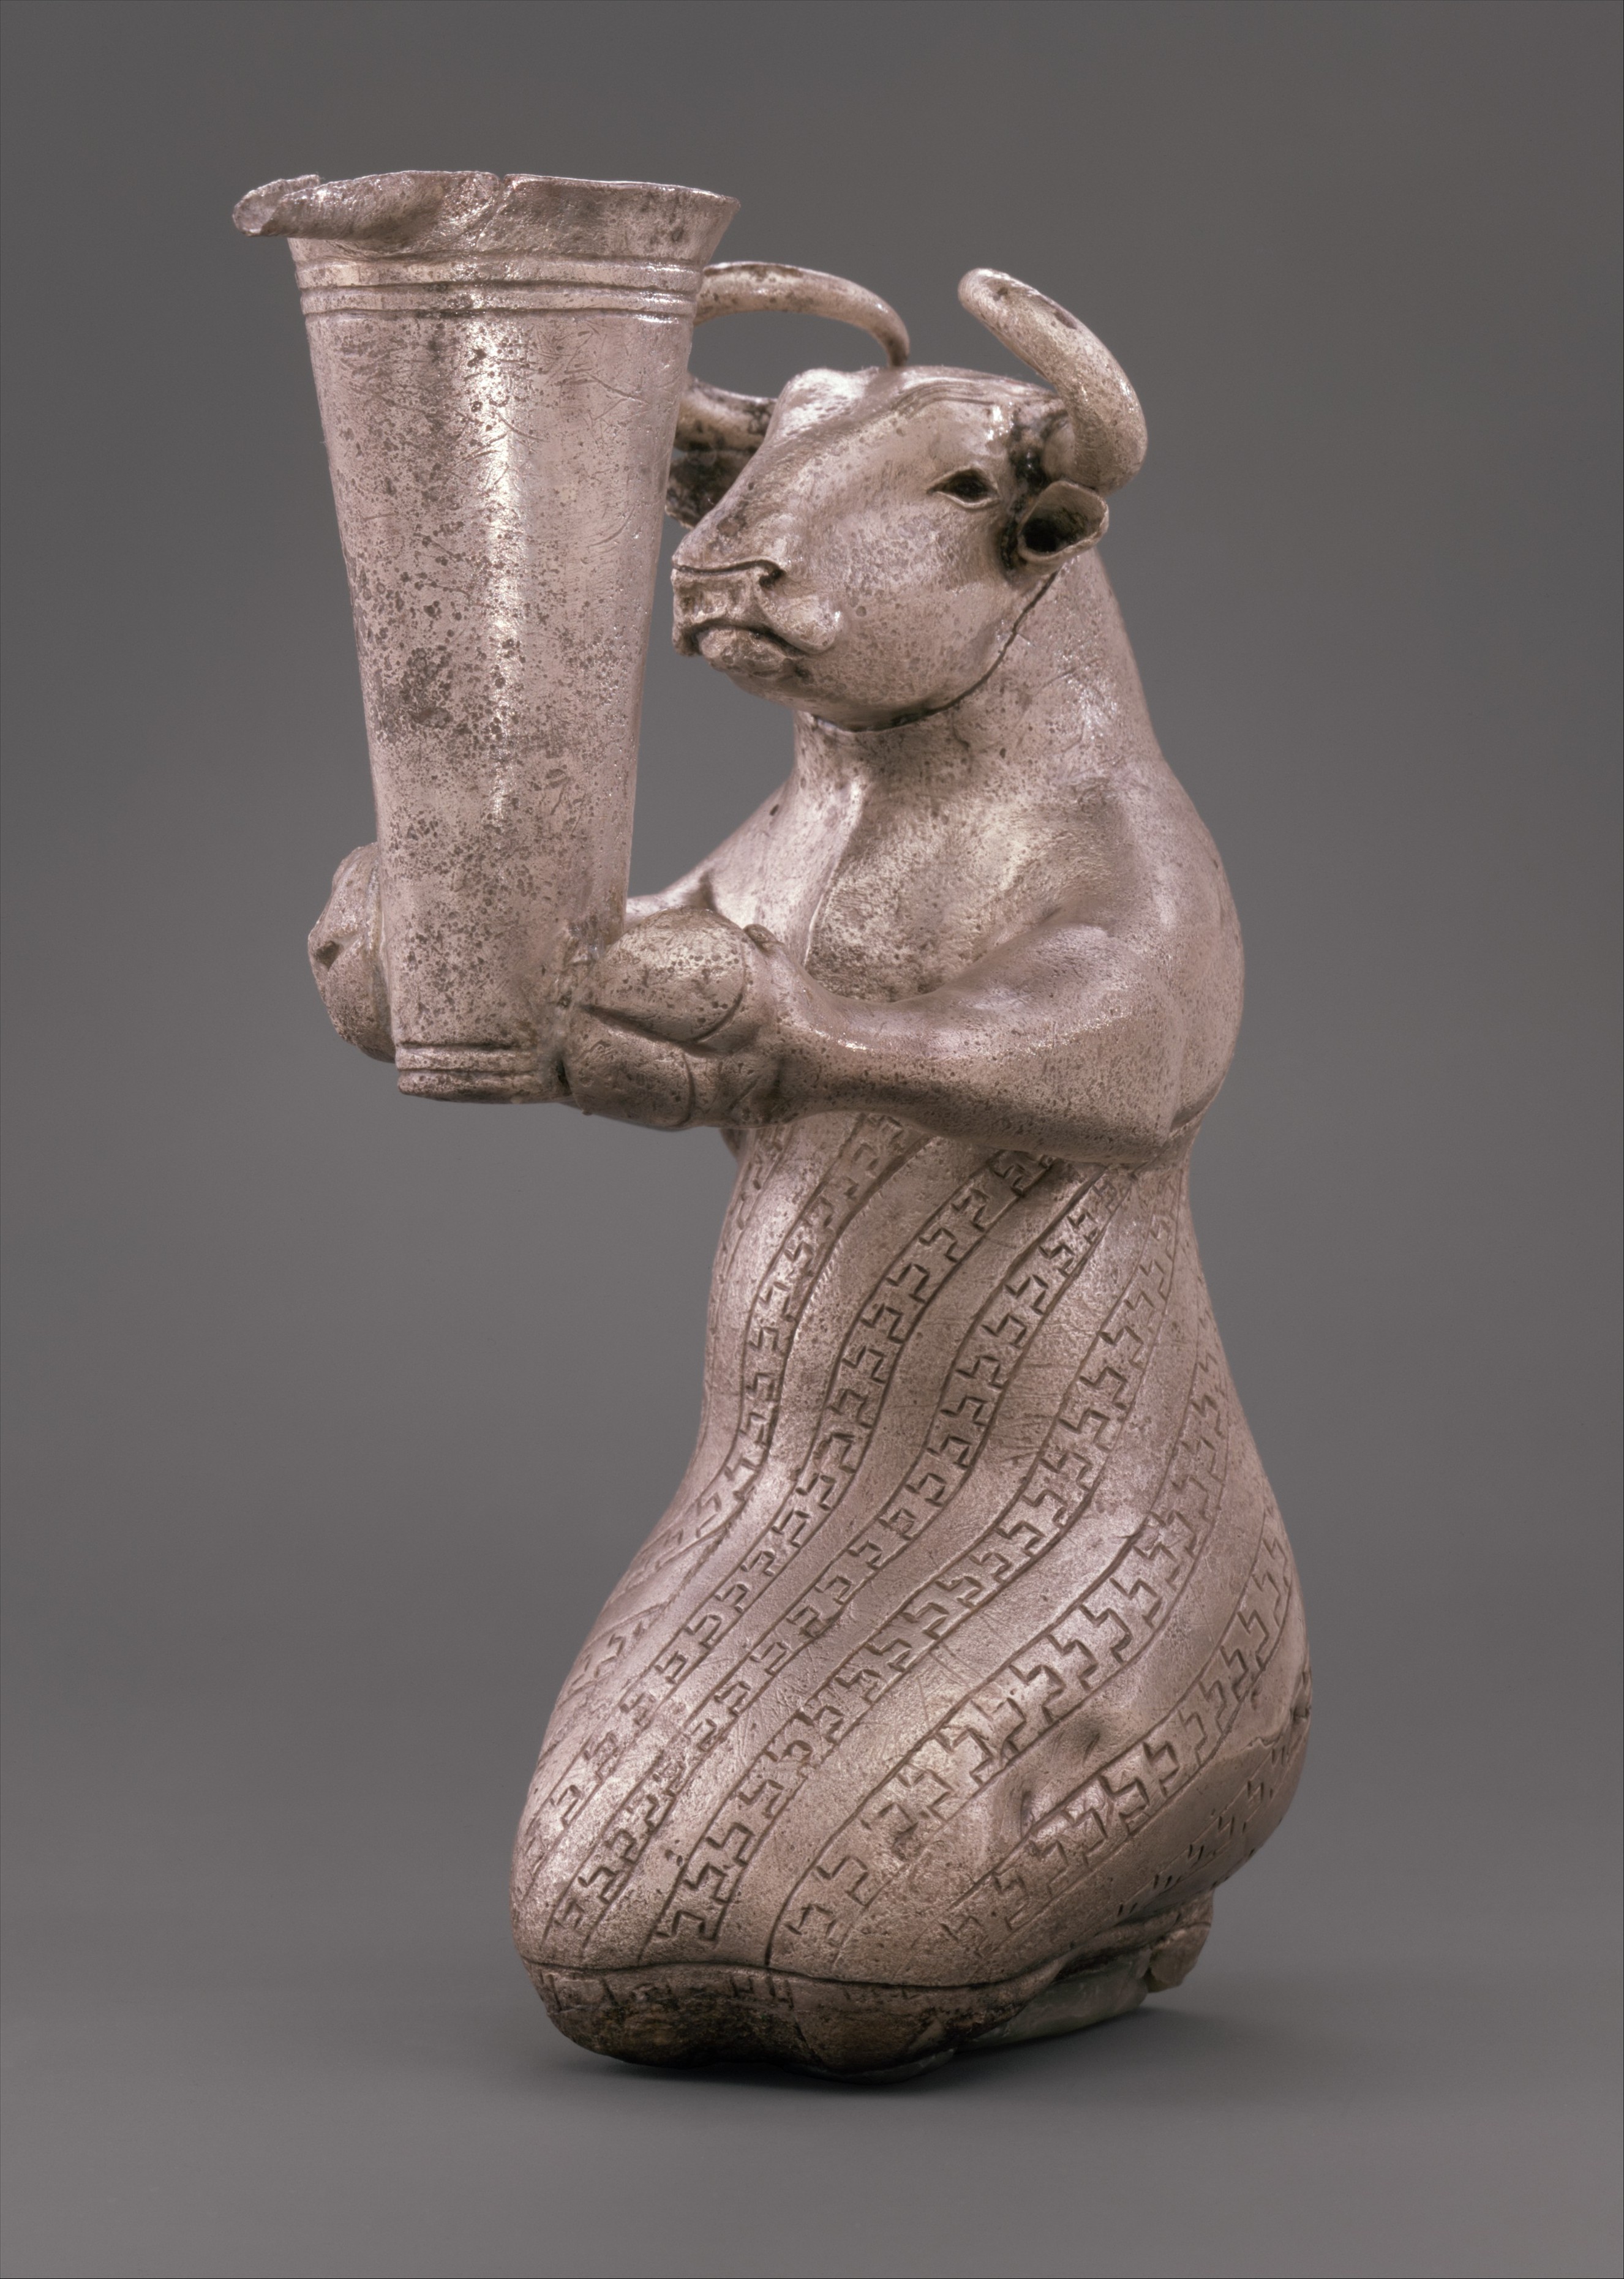 فنون هائلة قدمتها حضارات العراق القديم